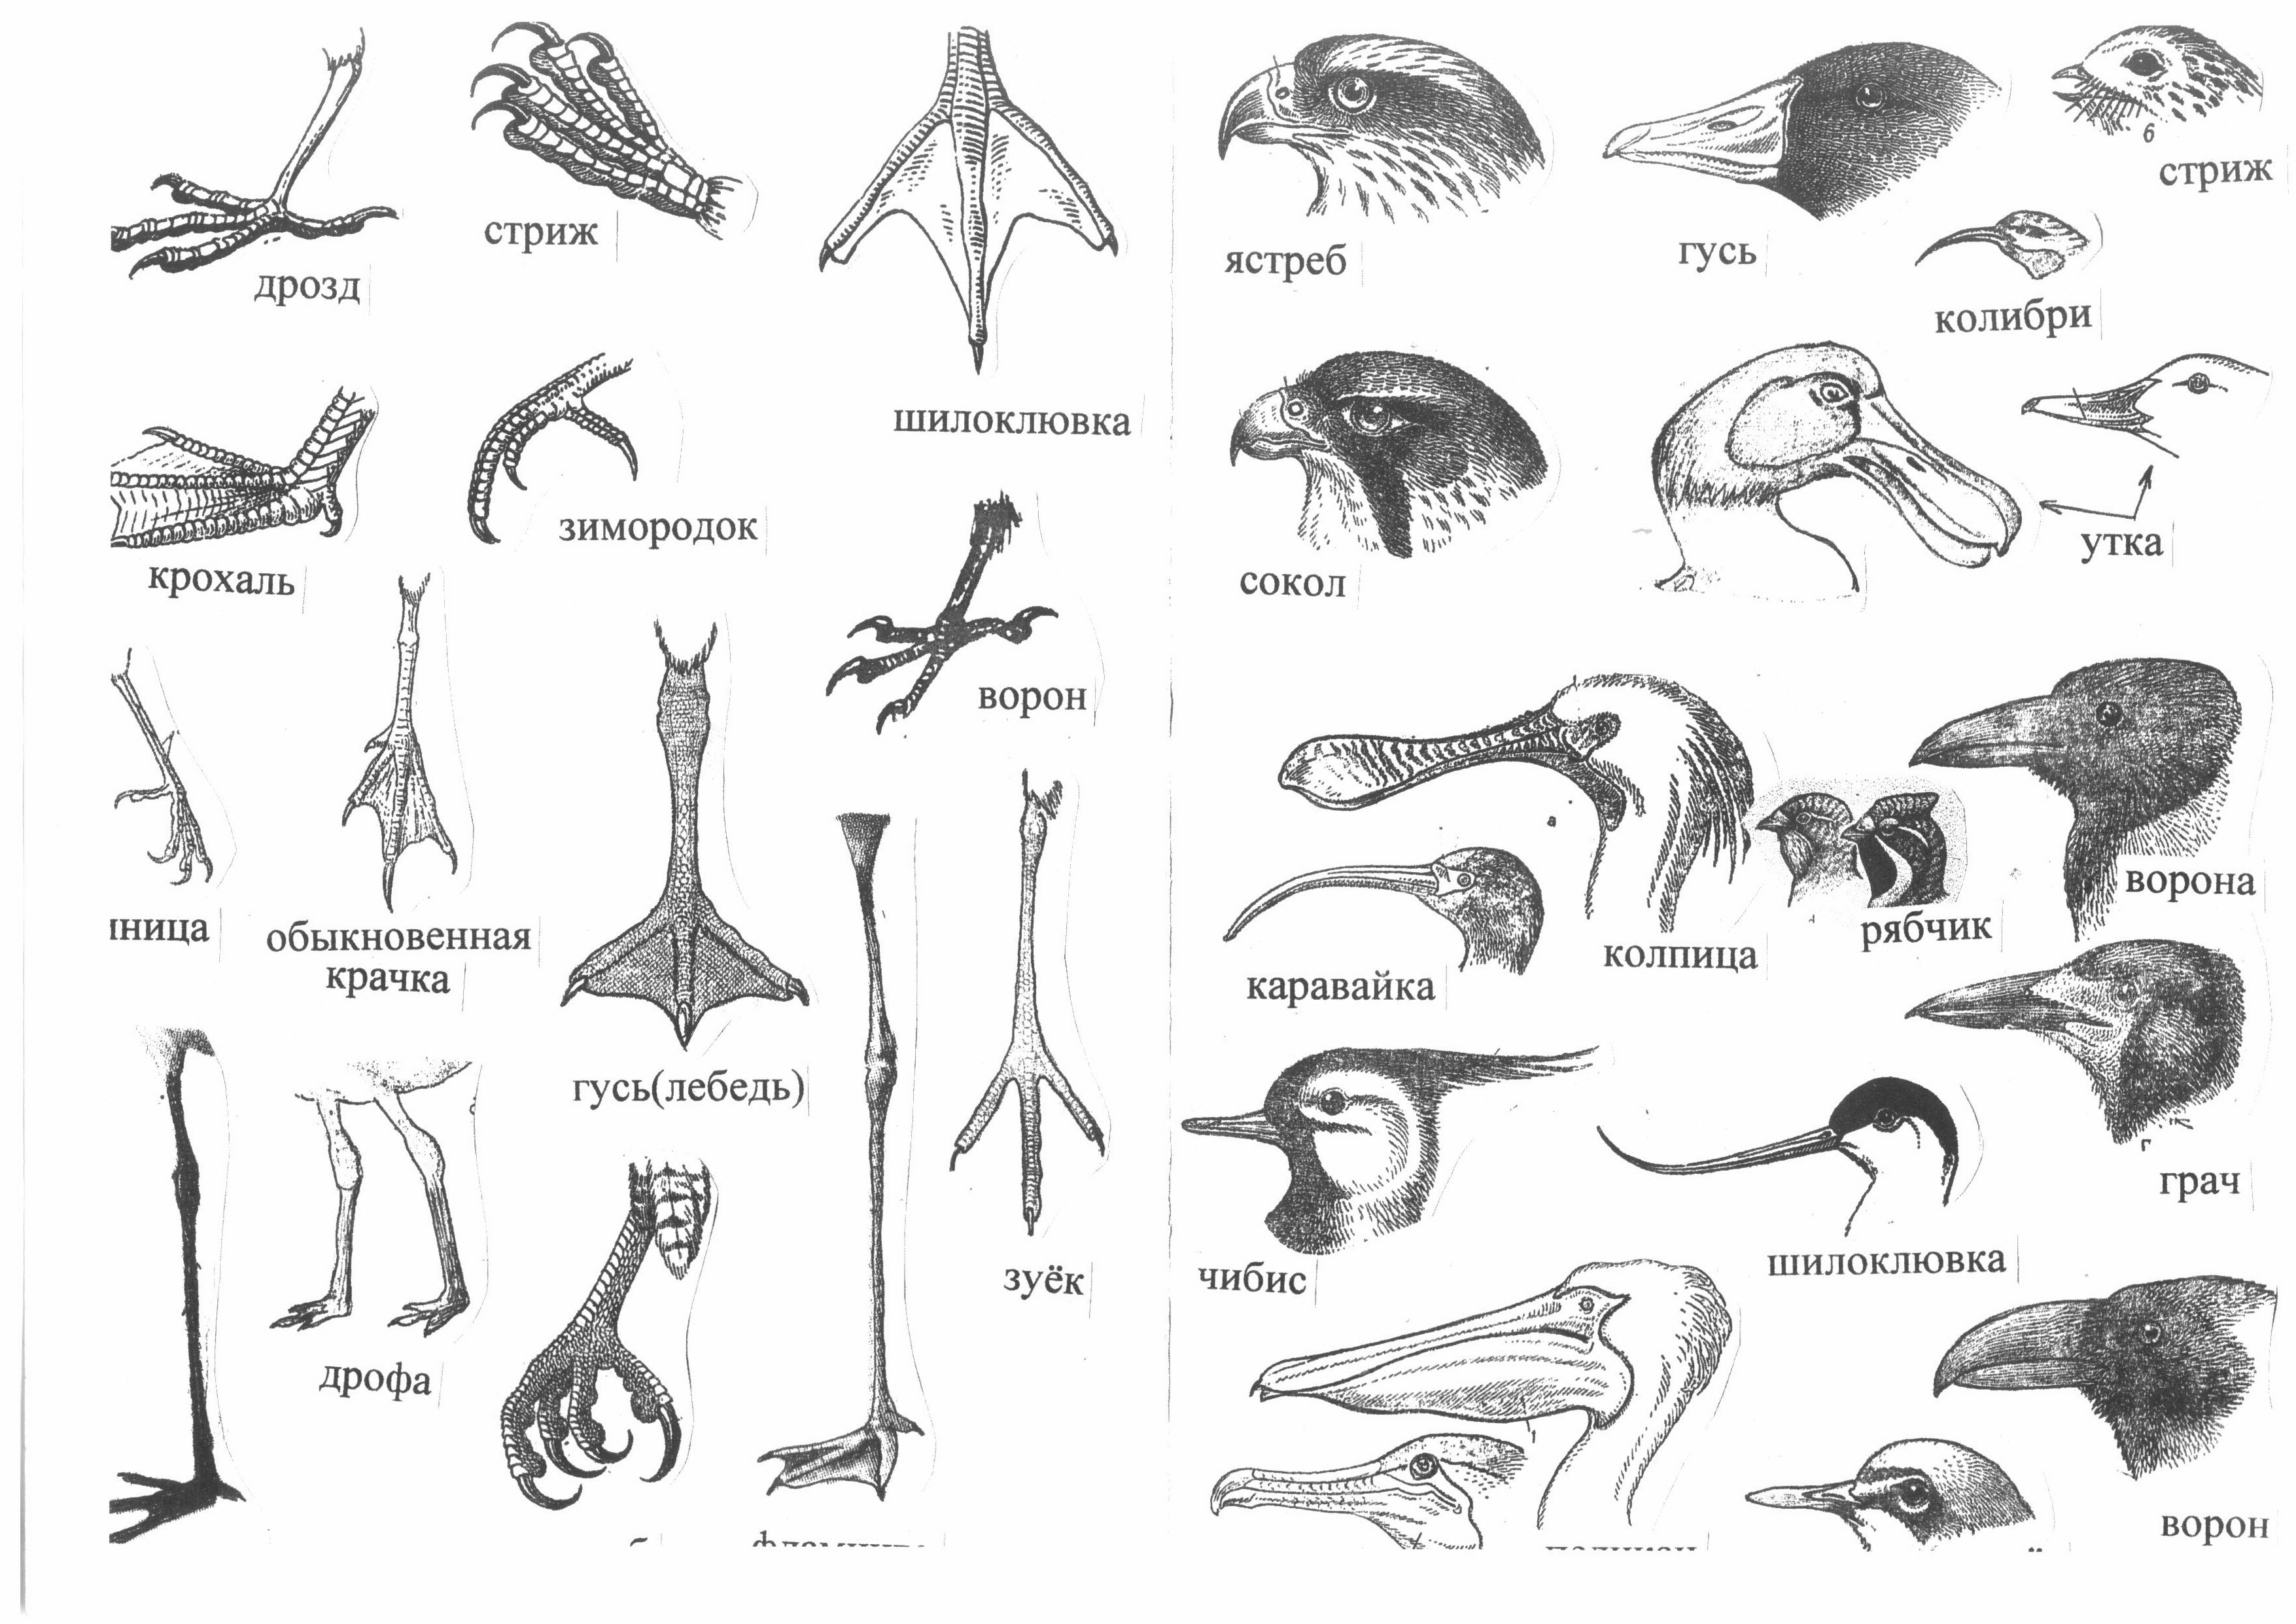 Форма и строение клюва птиц. Разнообразие клювов и лап птиц. Строение клюва водоплавающих птиц. Типы клювов. Формы клюва у птиц.